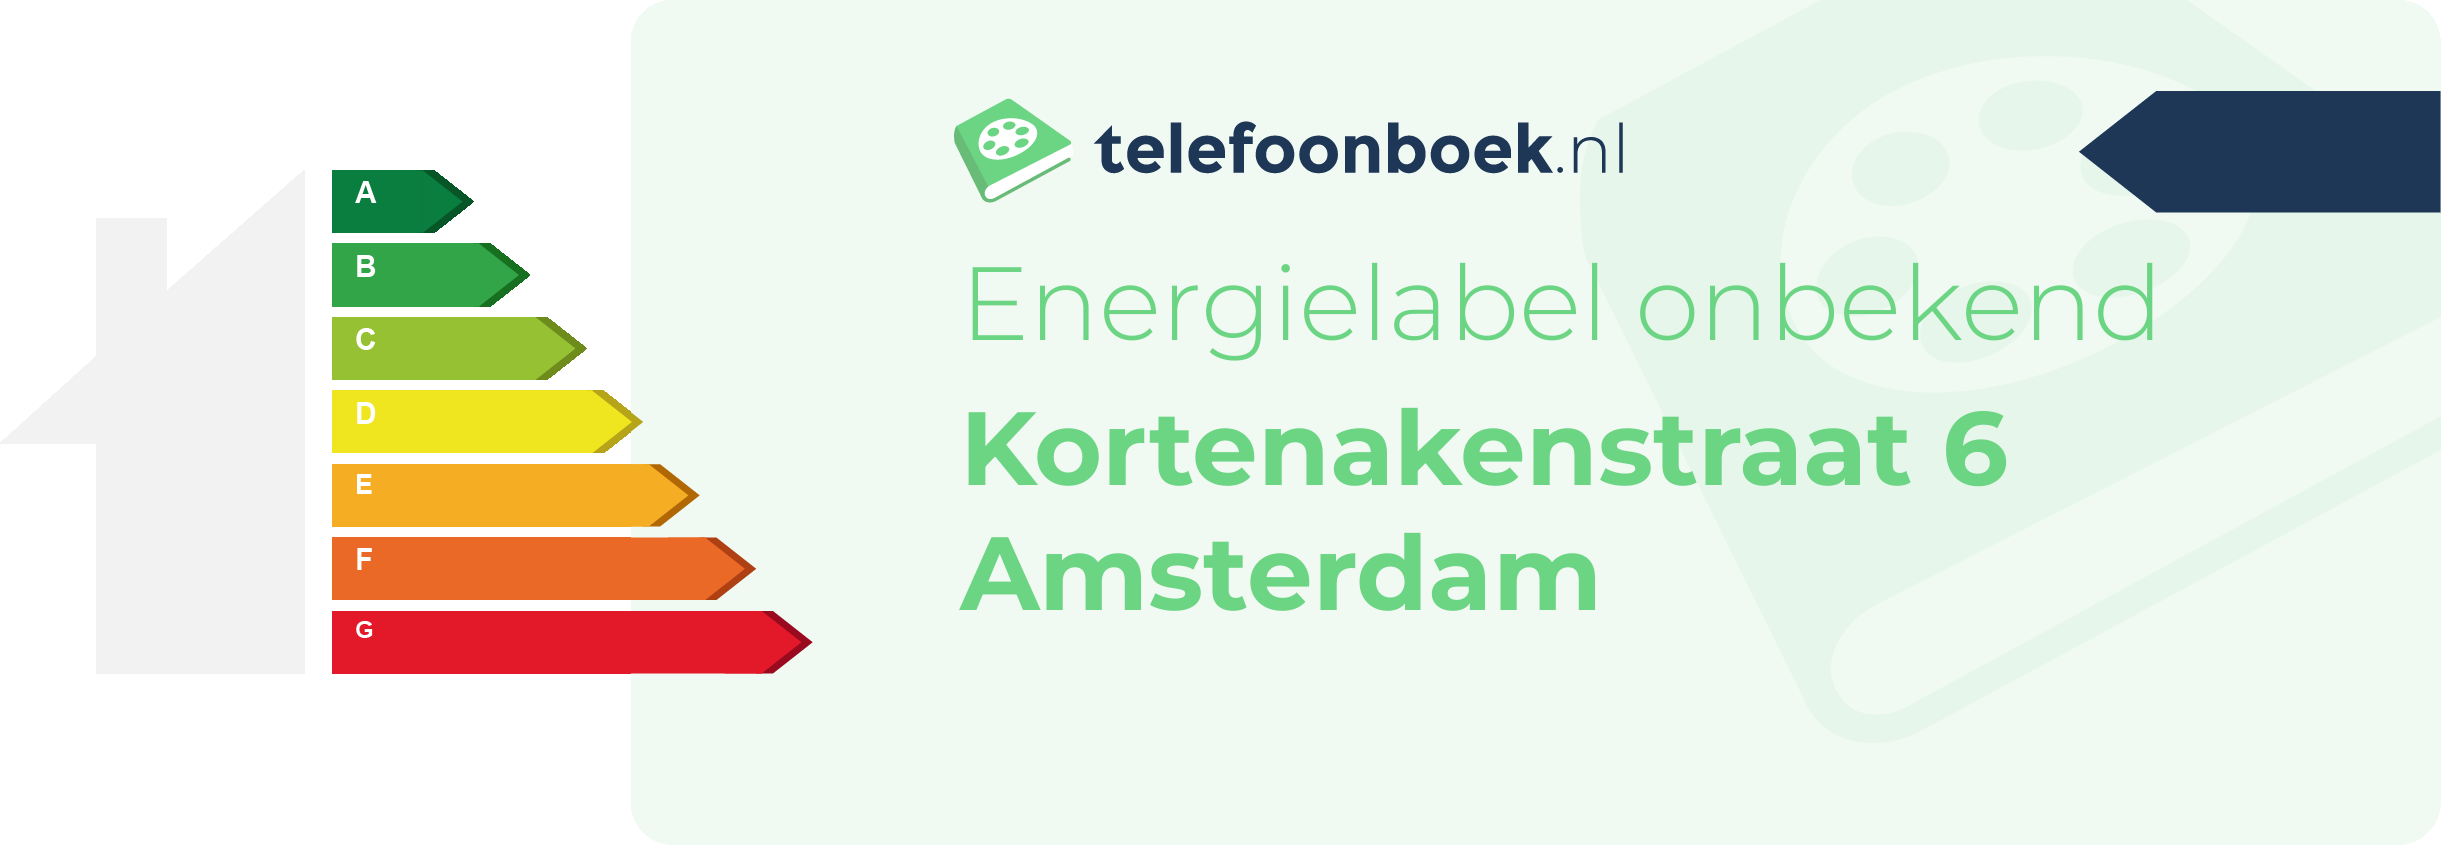 Energielabel Kortenakenstraat 6 Amsterdam